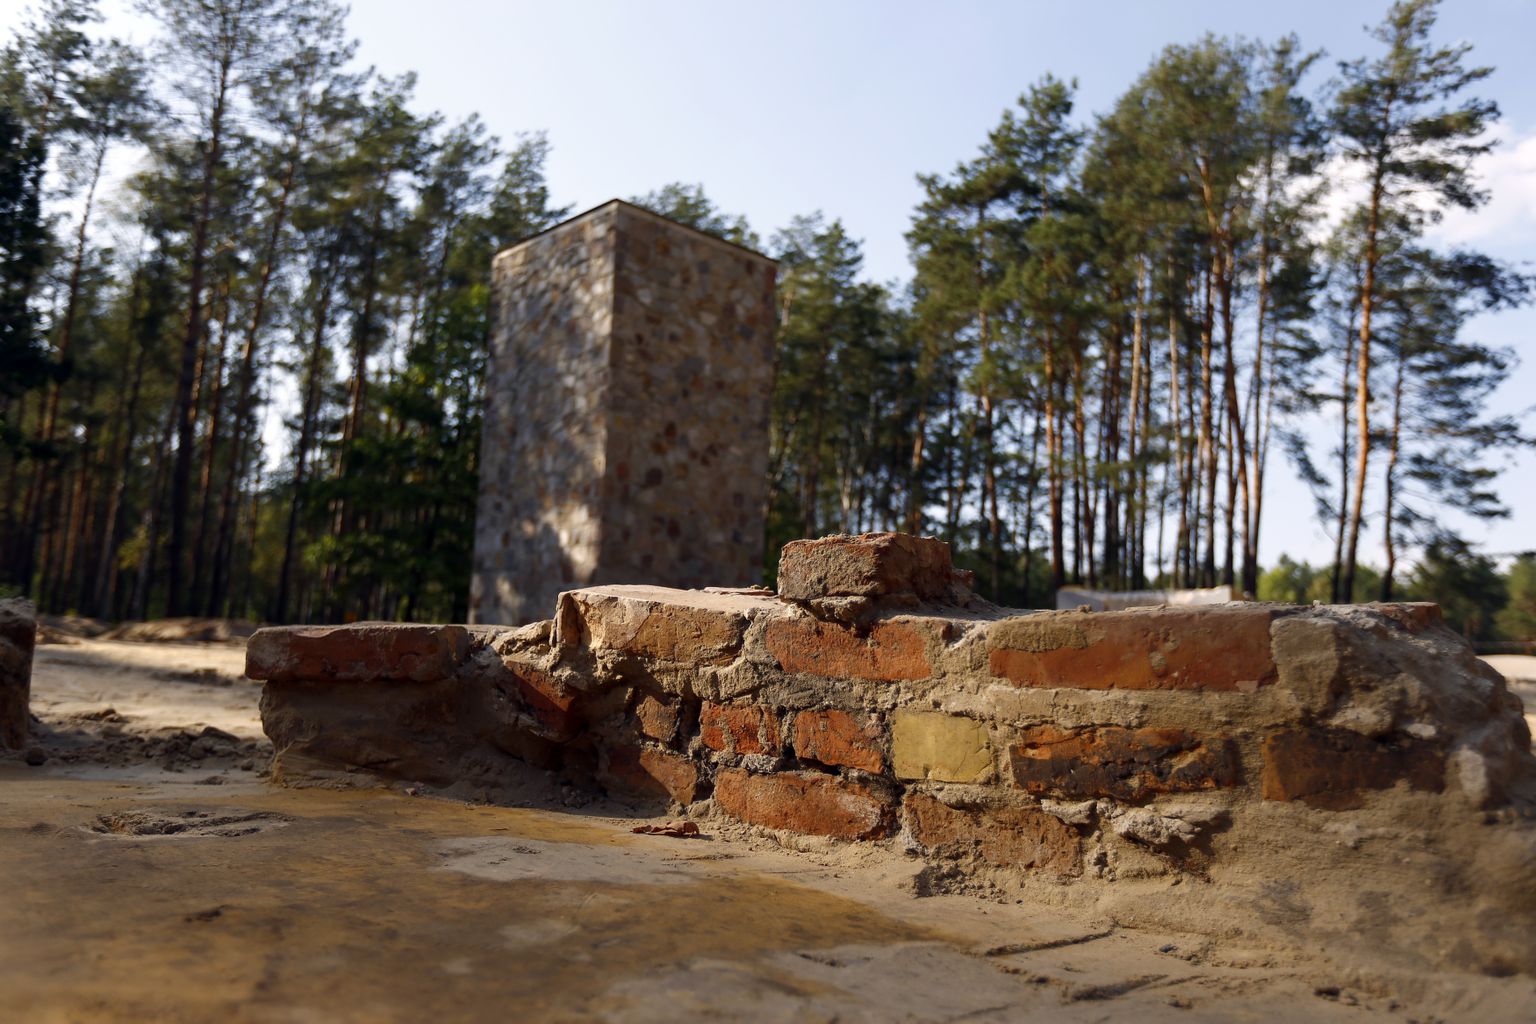 Natside poolt okupeeritud Poolas oli Sobibori koonduslaager, mida on alates 2007. aastast välja kaevatud. Pildil gaasikambri jäänused